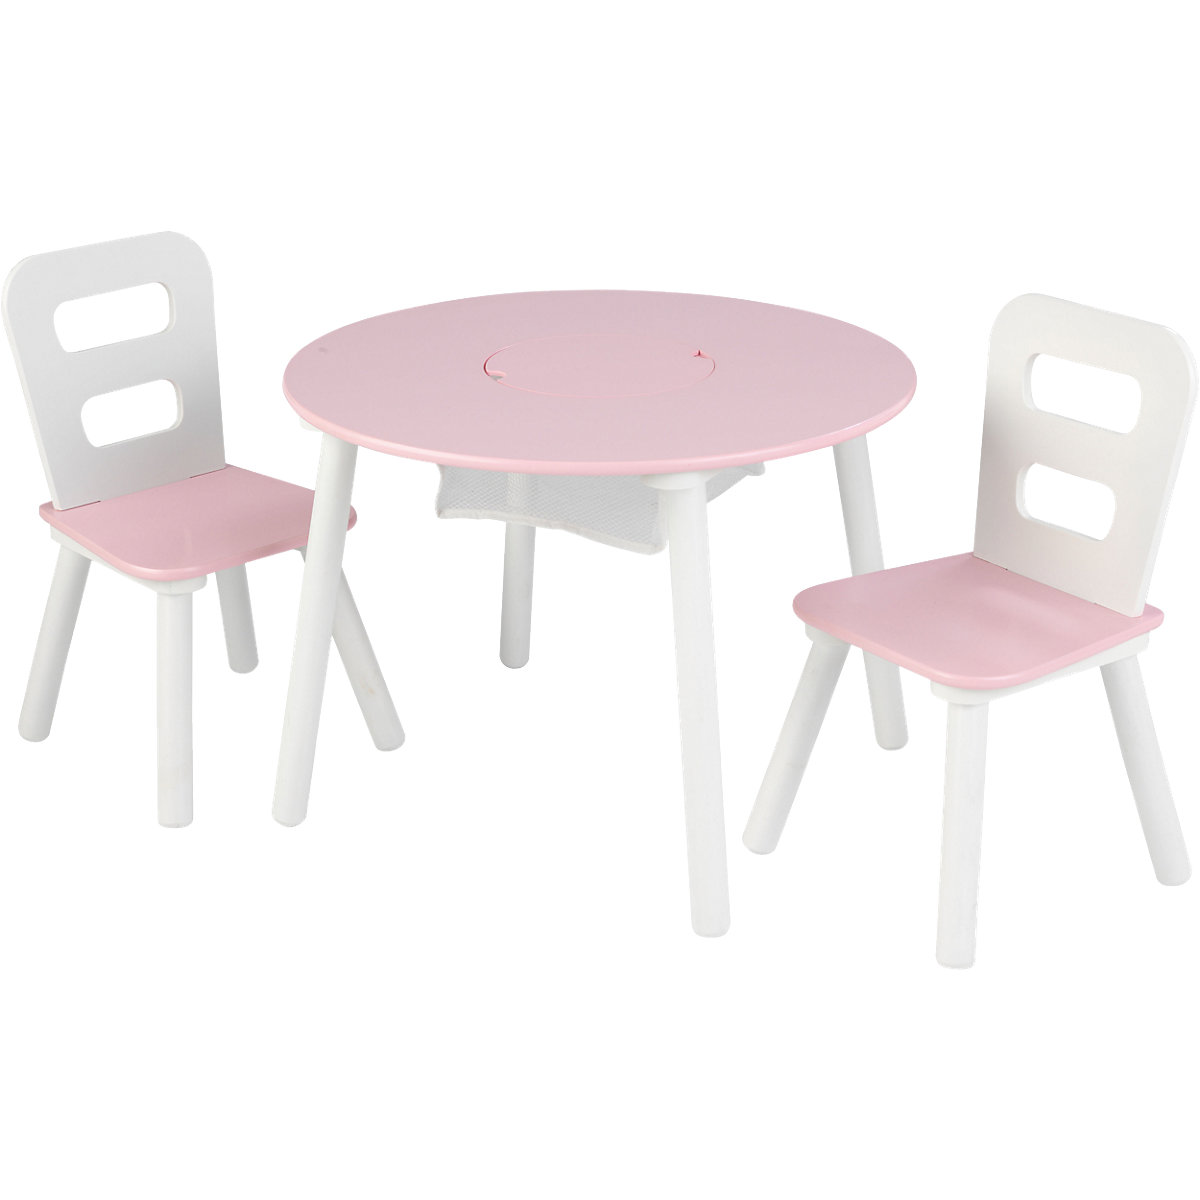 KidKraft Runder Aufbewahrungstisch & 2 Stühle Set white & pink